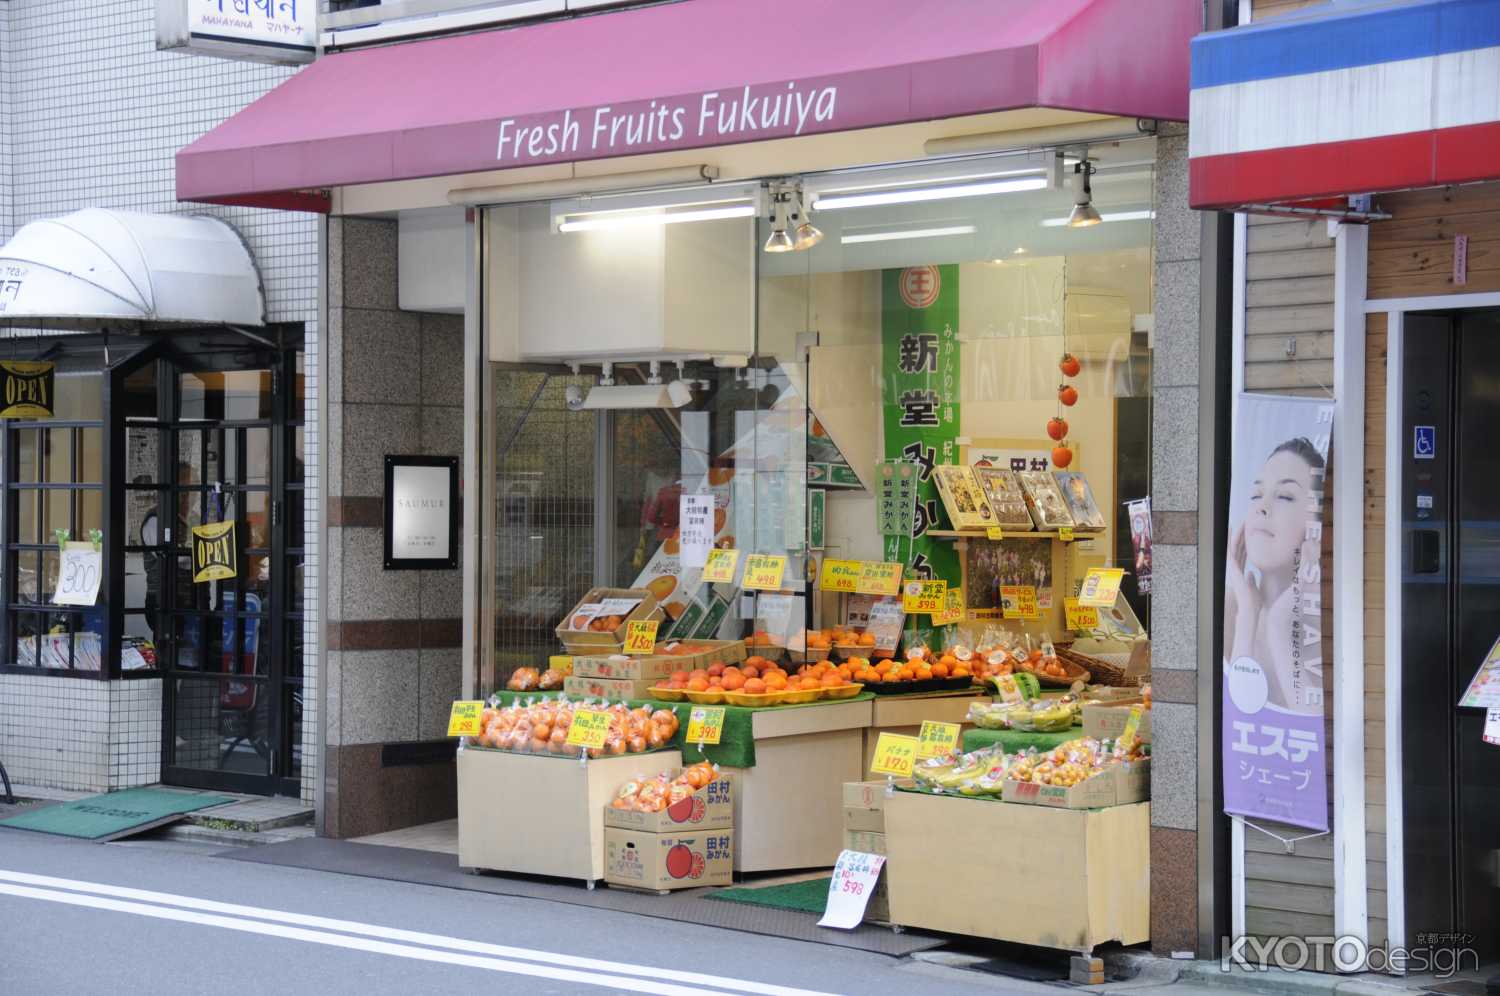 Fresh Fruits Fukuiya